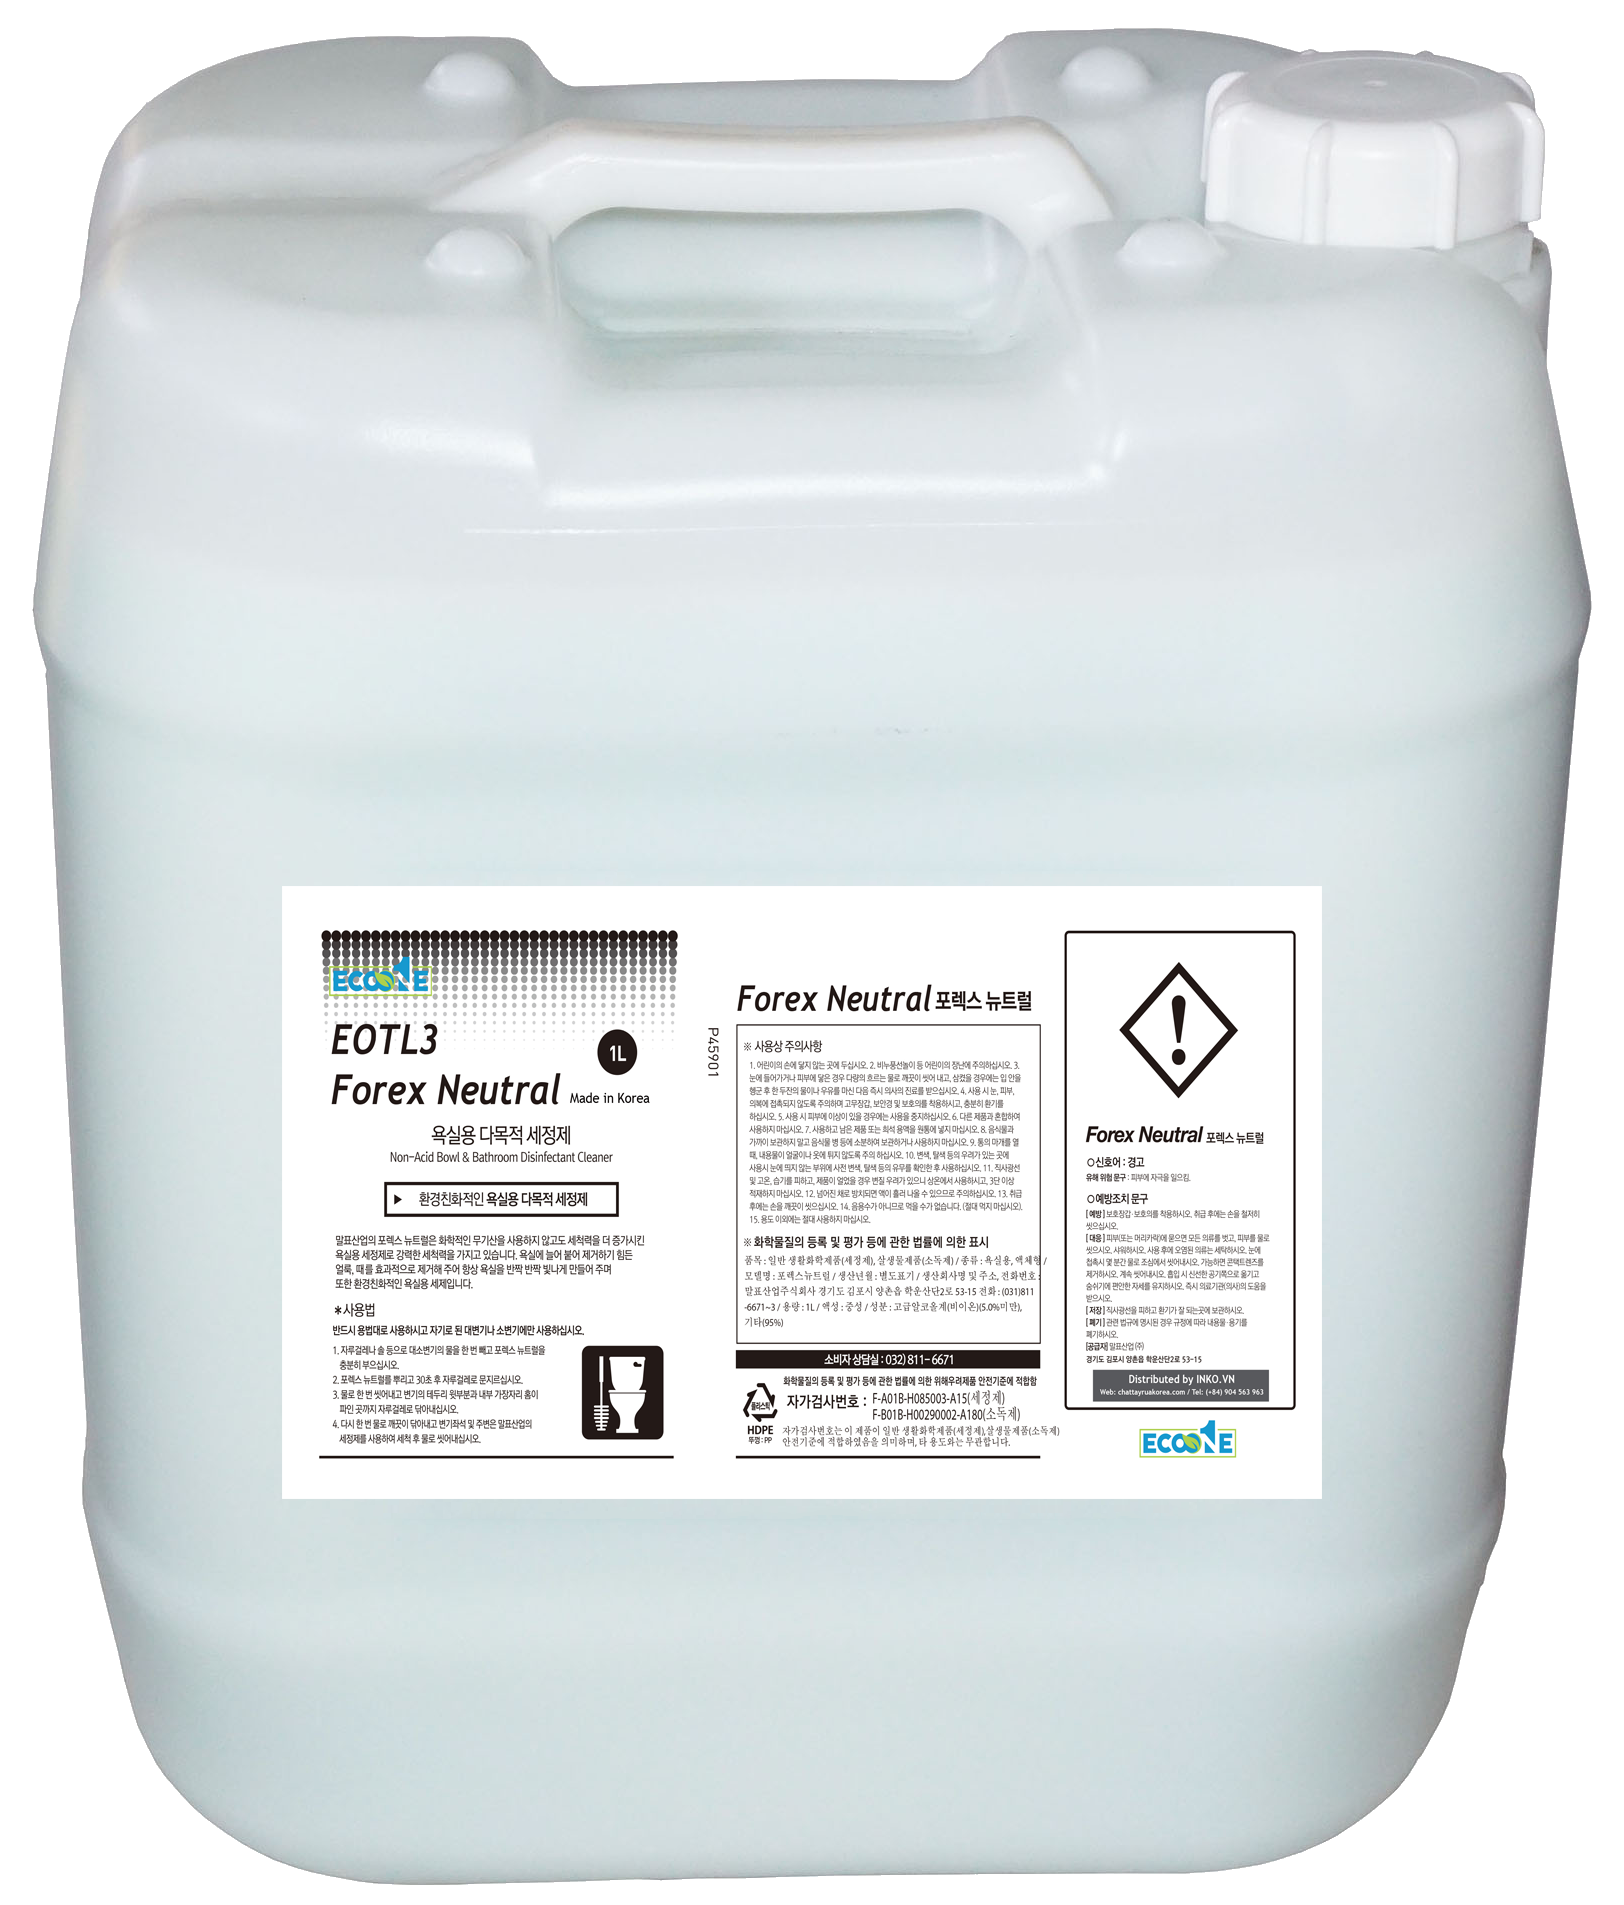 Hóa chất tẩy rửa trung tính đa năng EOTL3 Forex Neutral dung tích 18,75 lit